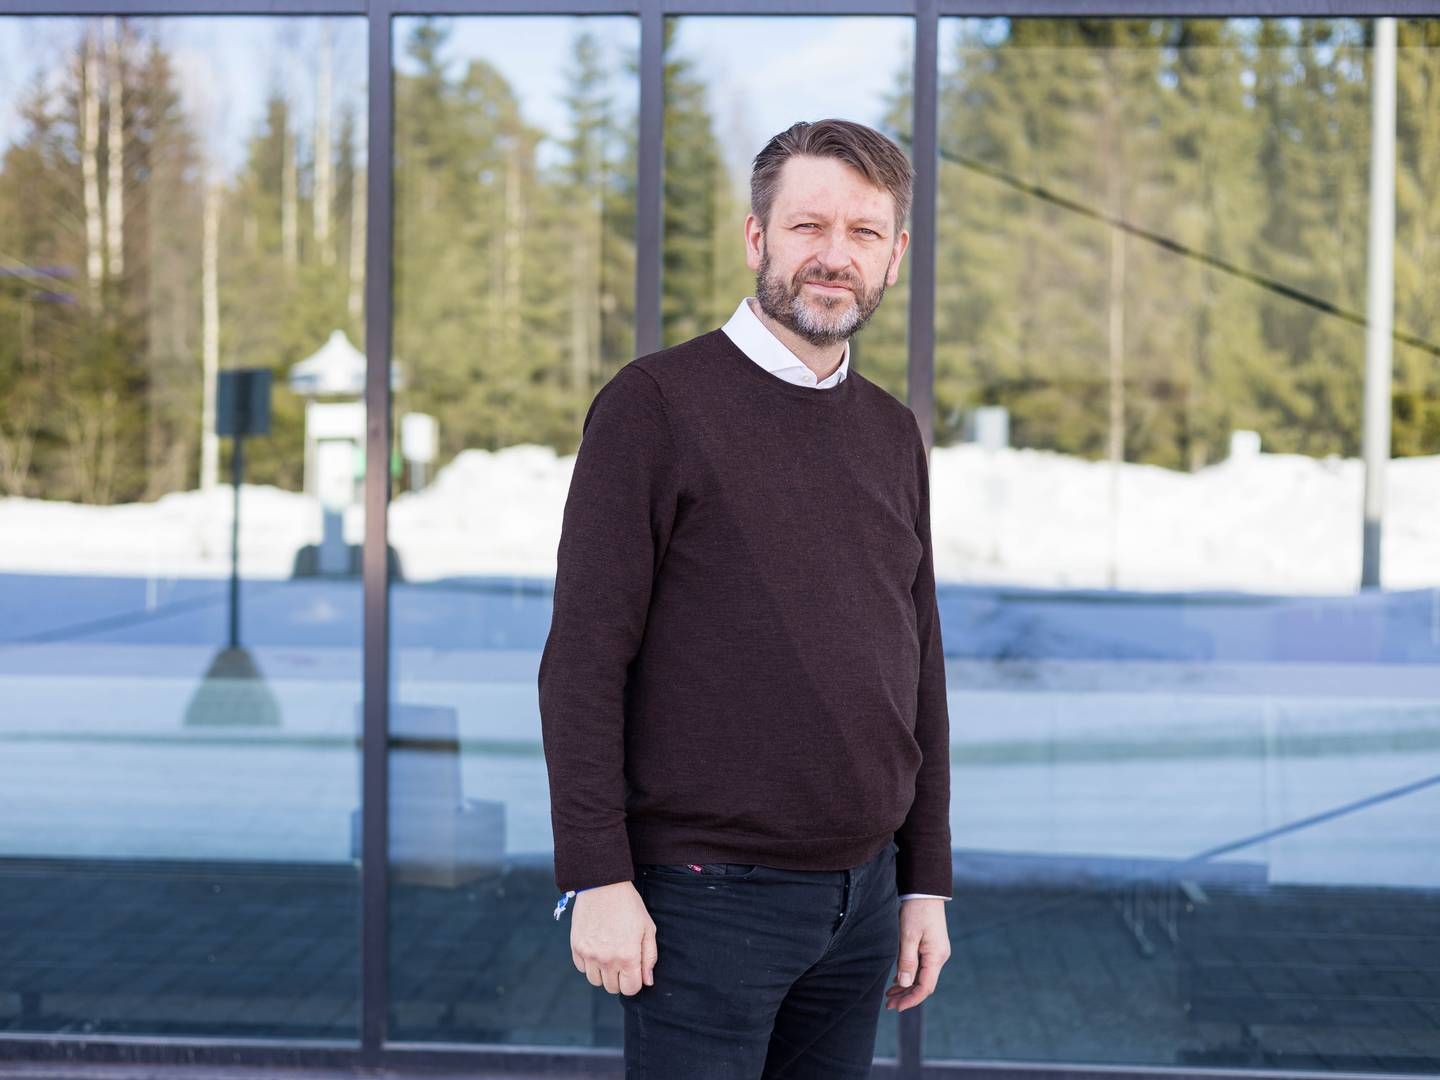 VIL SELGE: Eirik Lae Solberg fra Oslo Høyre ønsker å selge de to tomtene på Ullern til Oslo Science Hub. | Foto: Alf Simensen / NTB